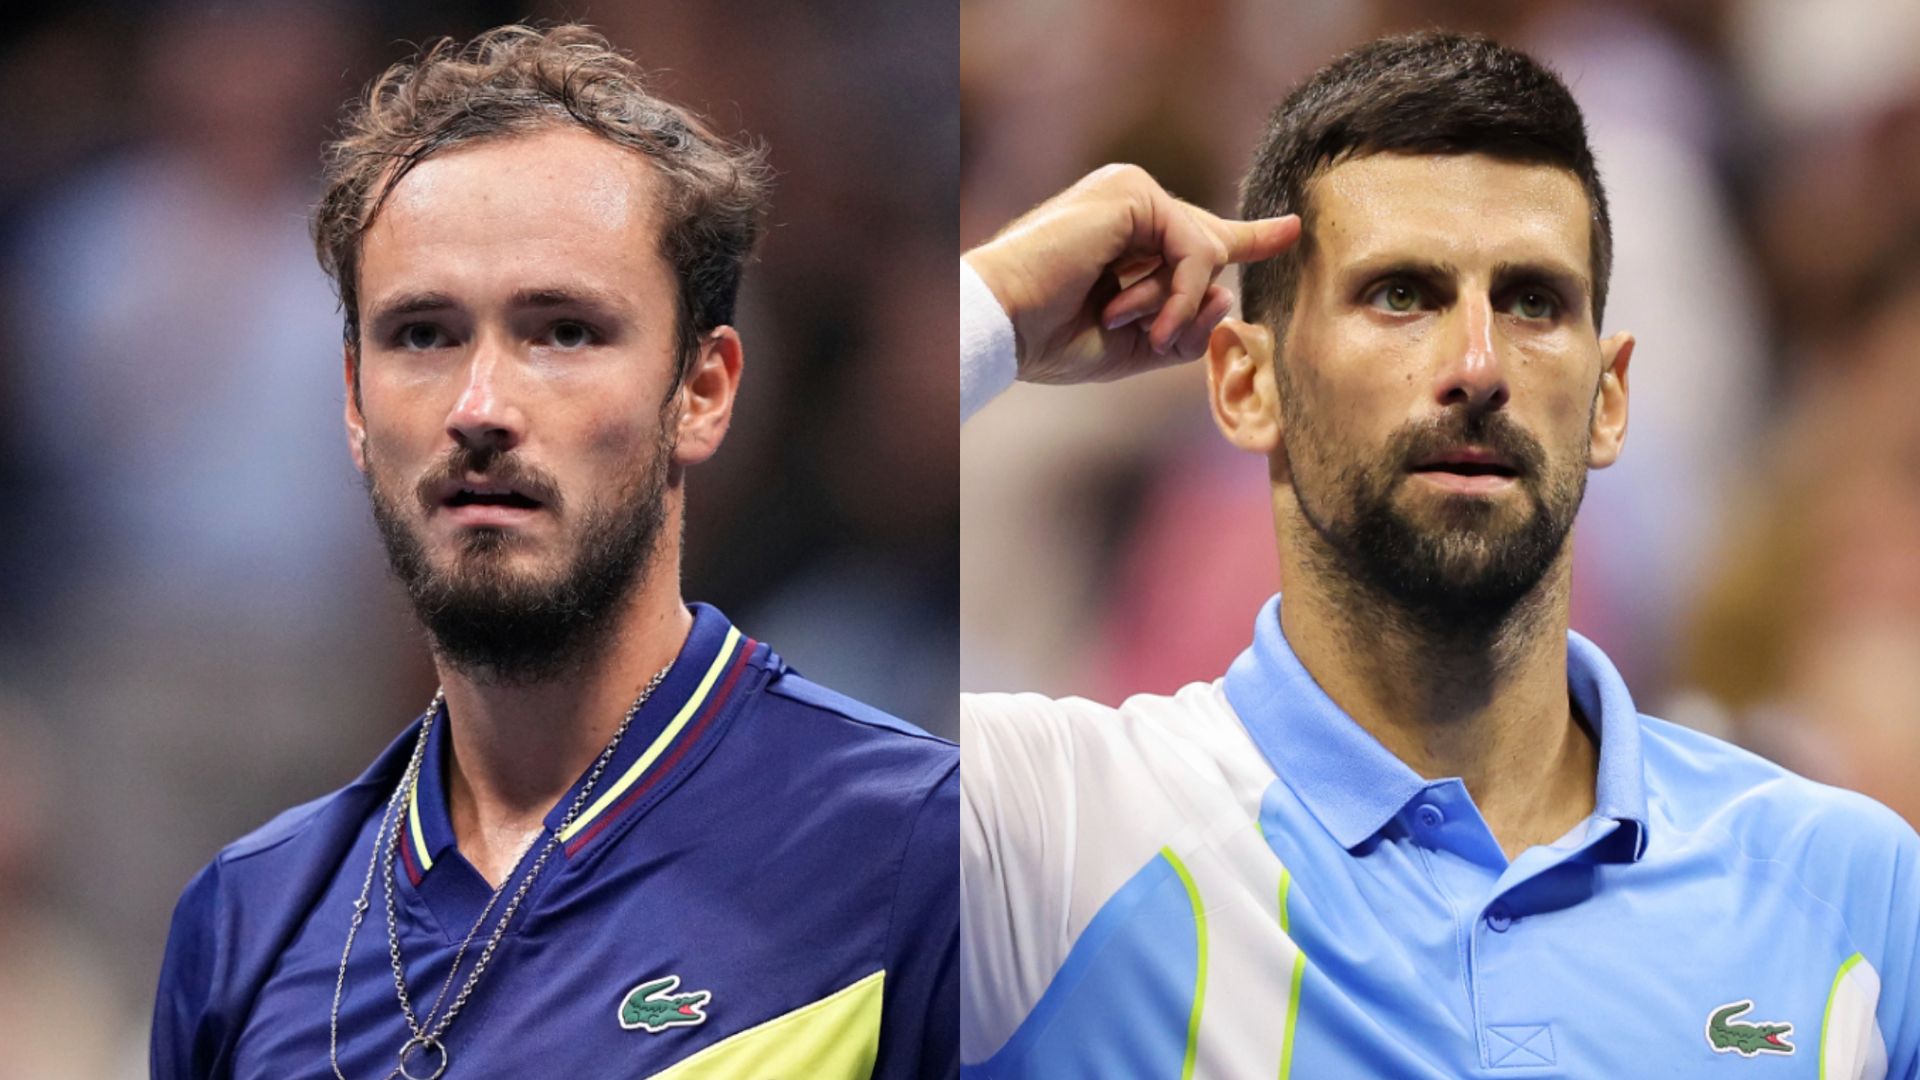 Medvedev vs Djokovic in the US Open final LIVE! Send in your predictions